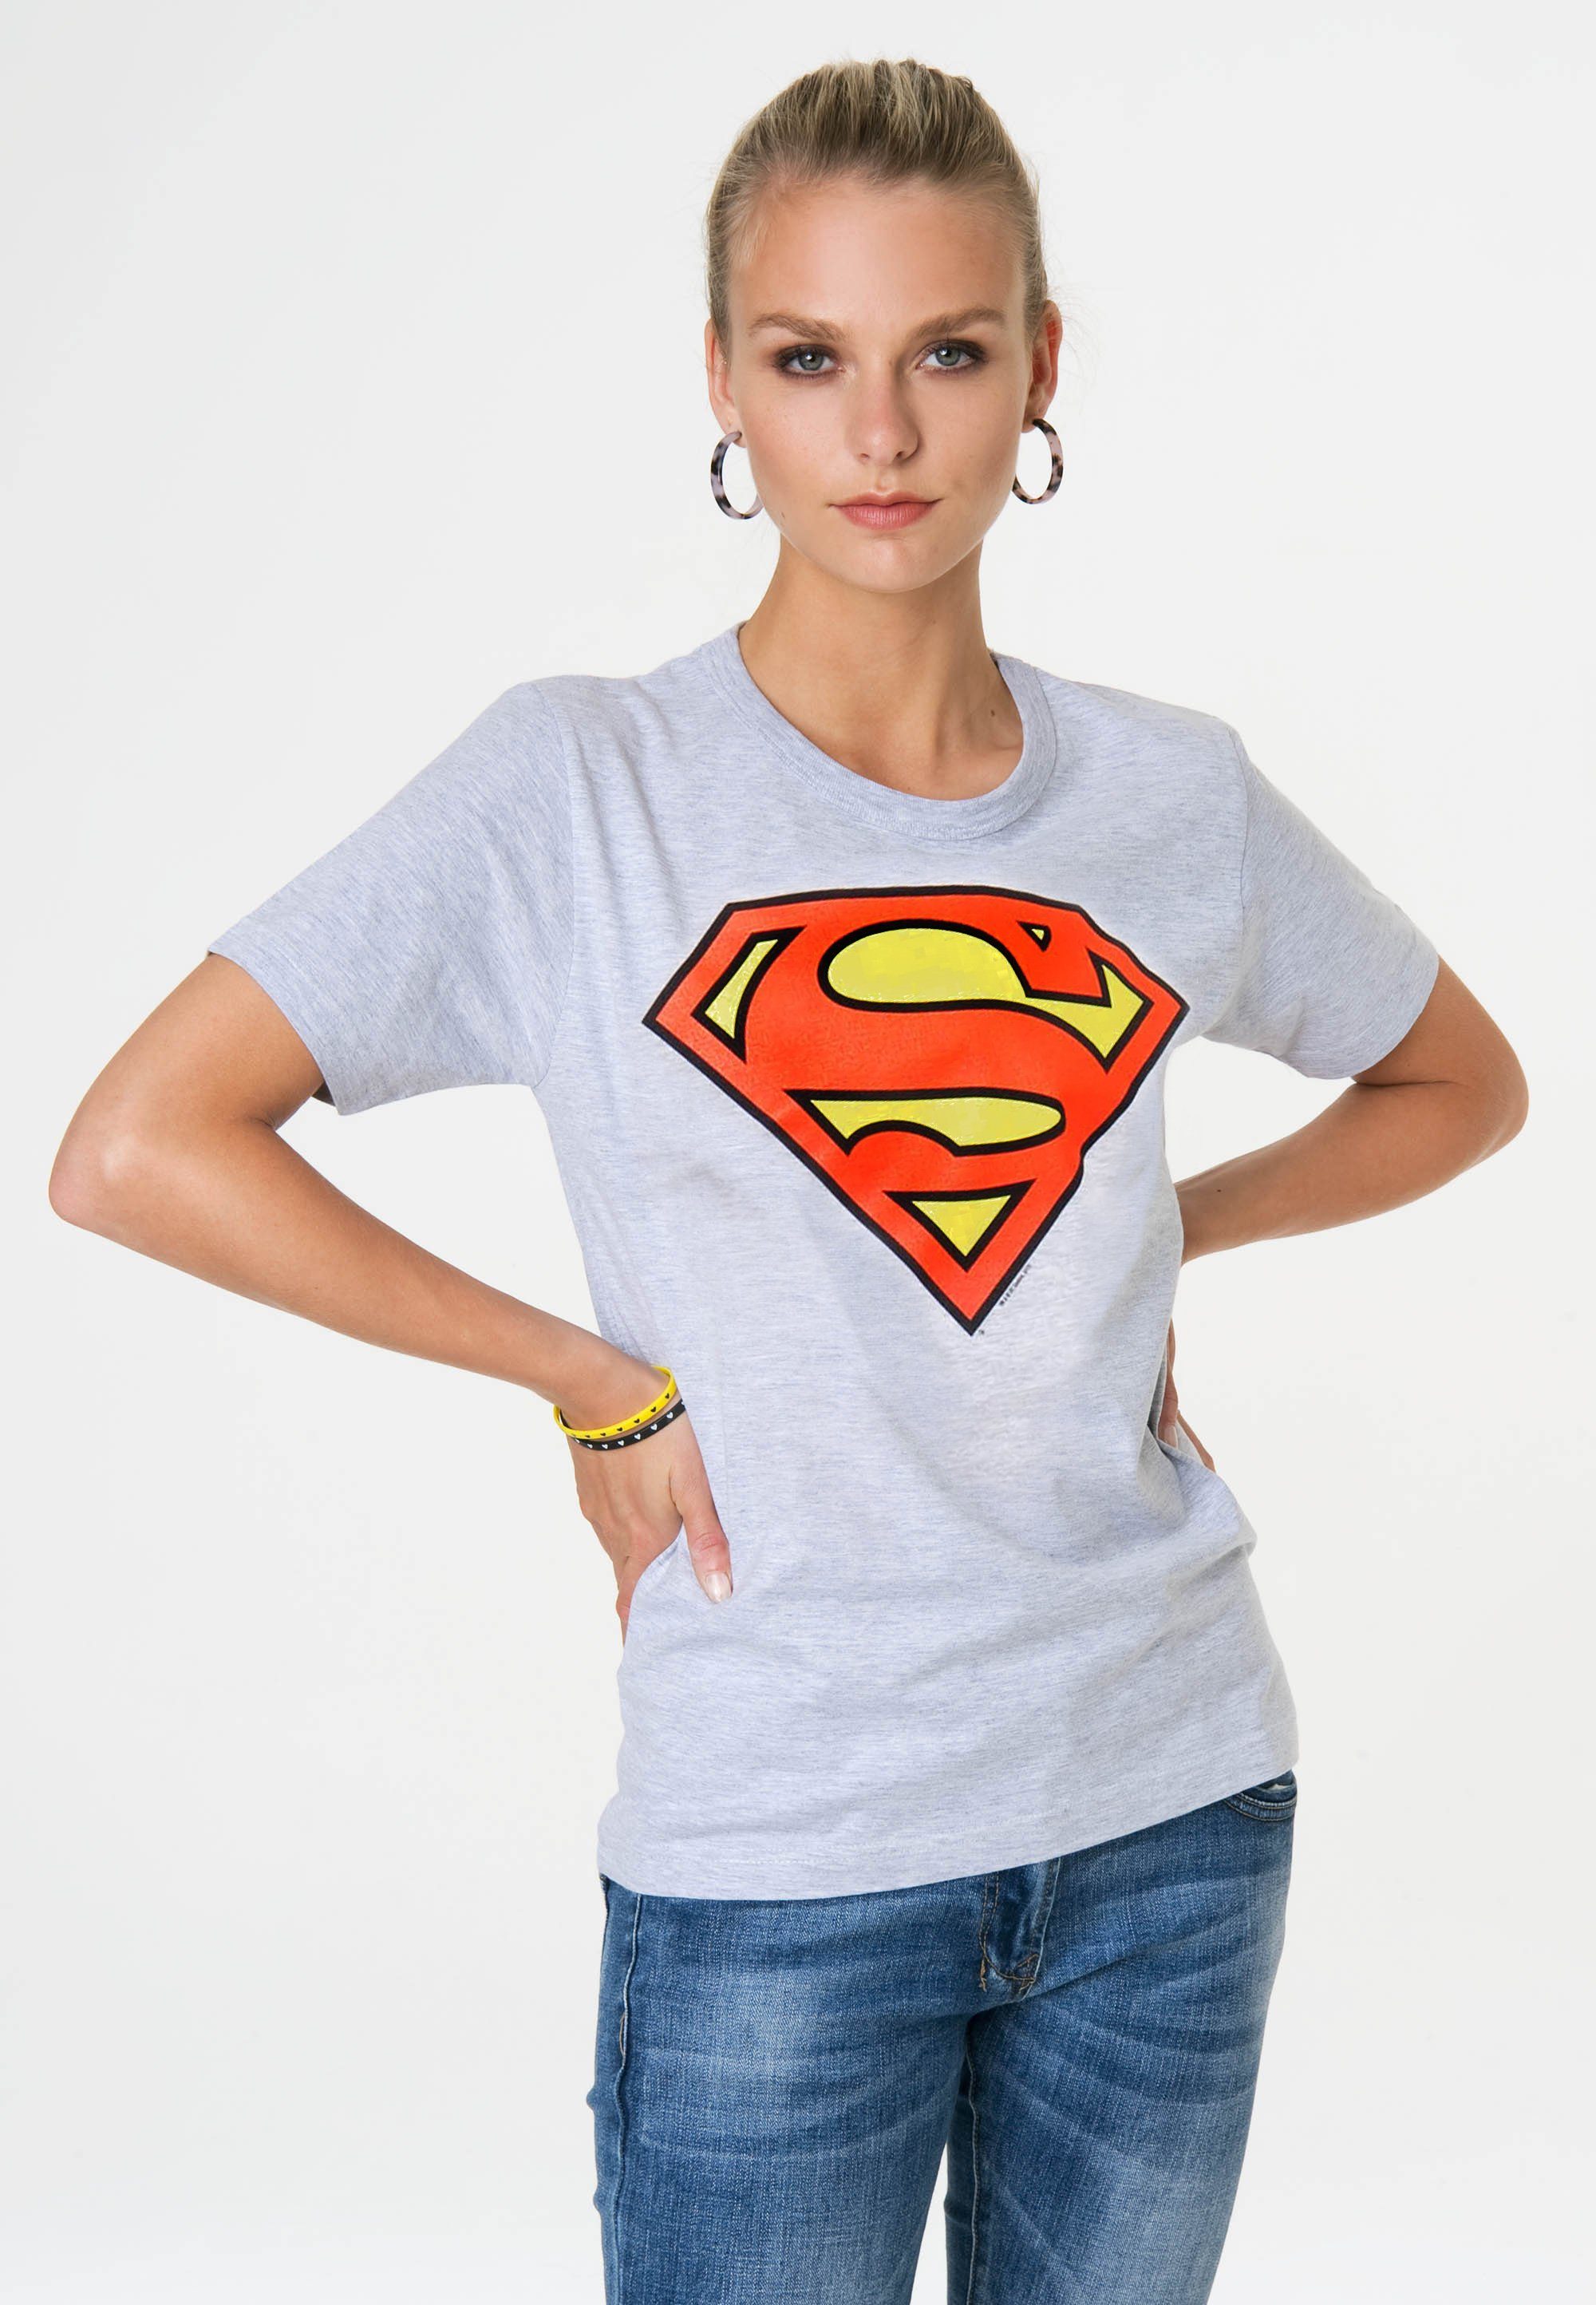 LOGOSHIRT T-Shirt Superman Logo mit grau-meliert trendigem Superhelden-Print